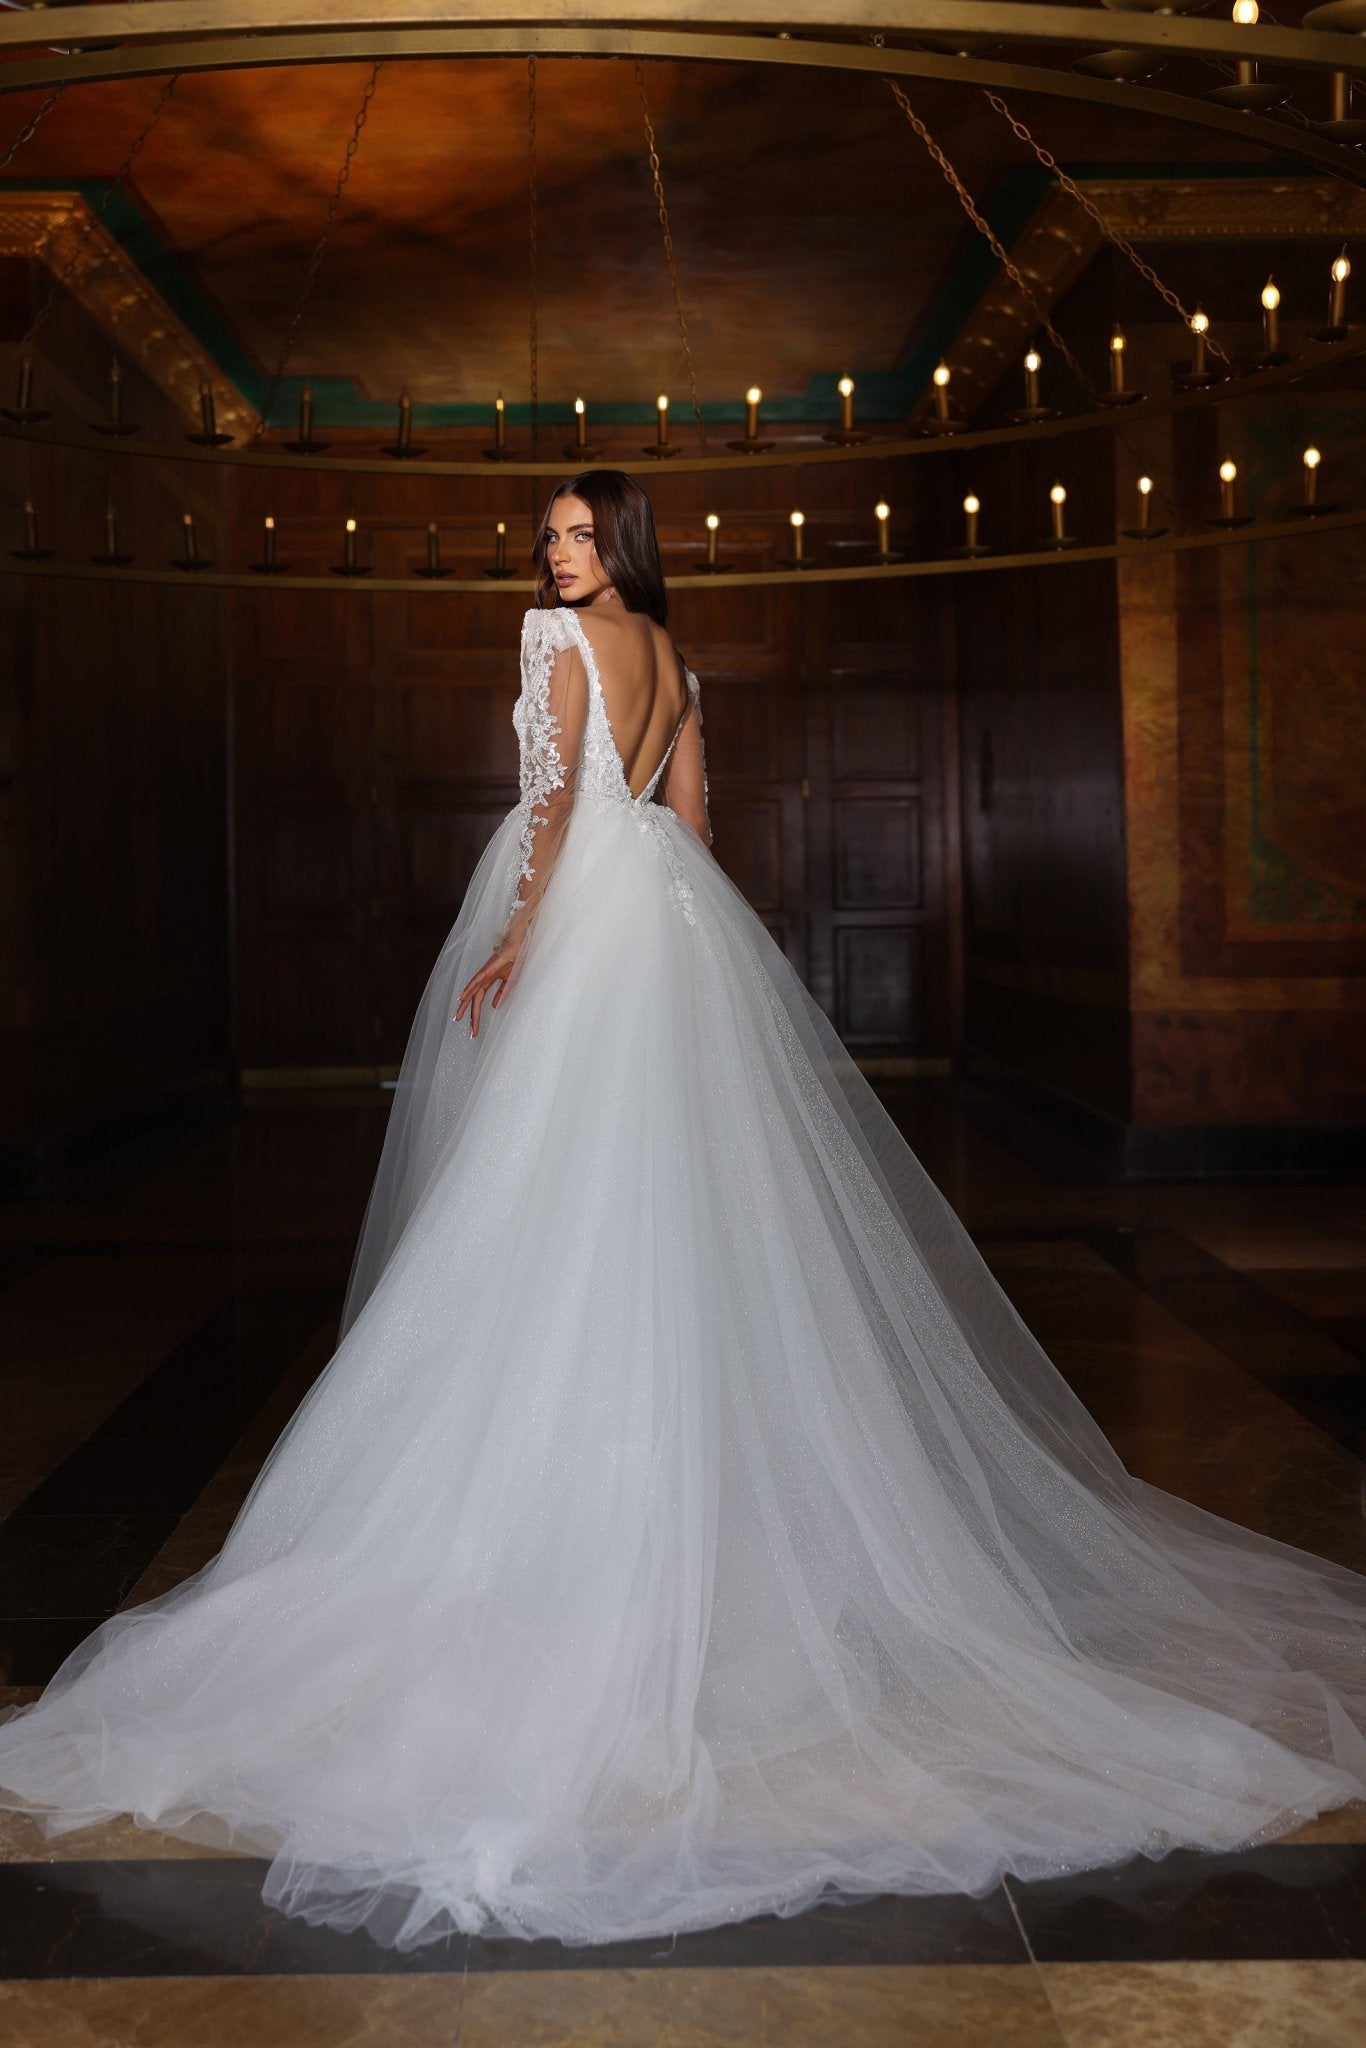 Luxurious V-Neck Wedding Dress with Lace Embellishments and Tulle Skirt Plus Size - WonderlandByLilian